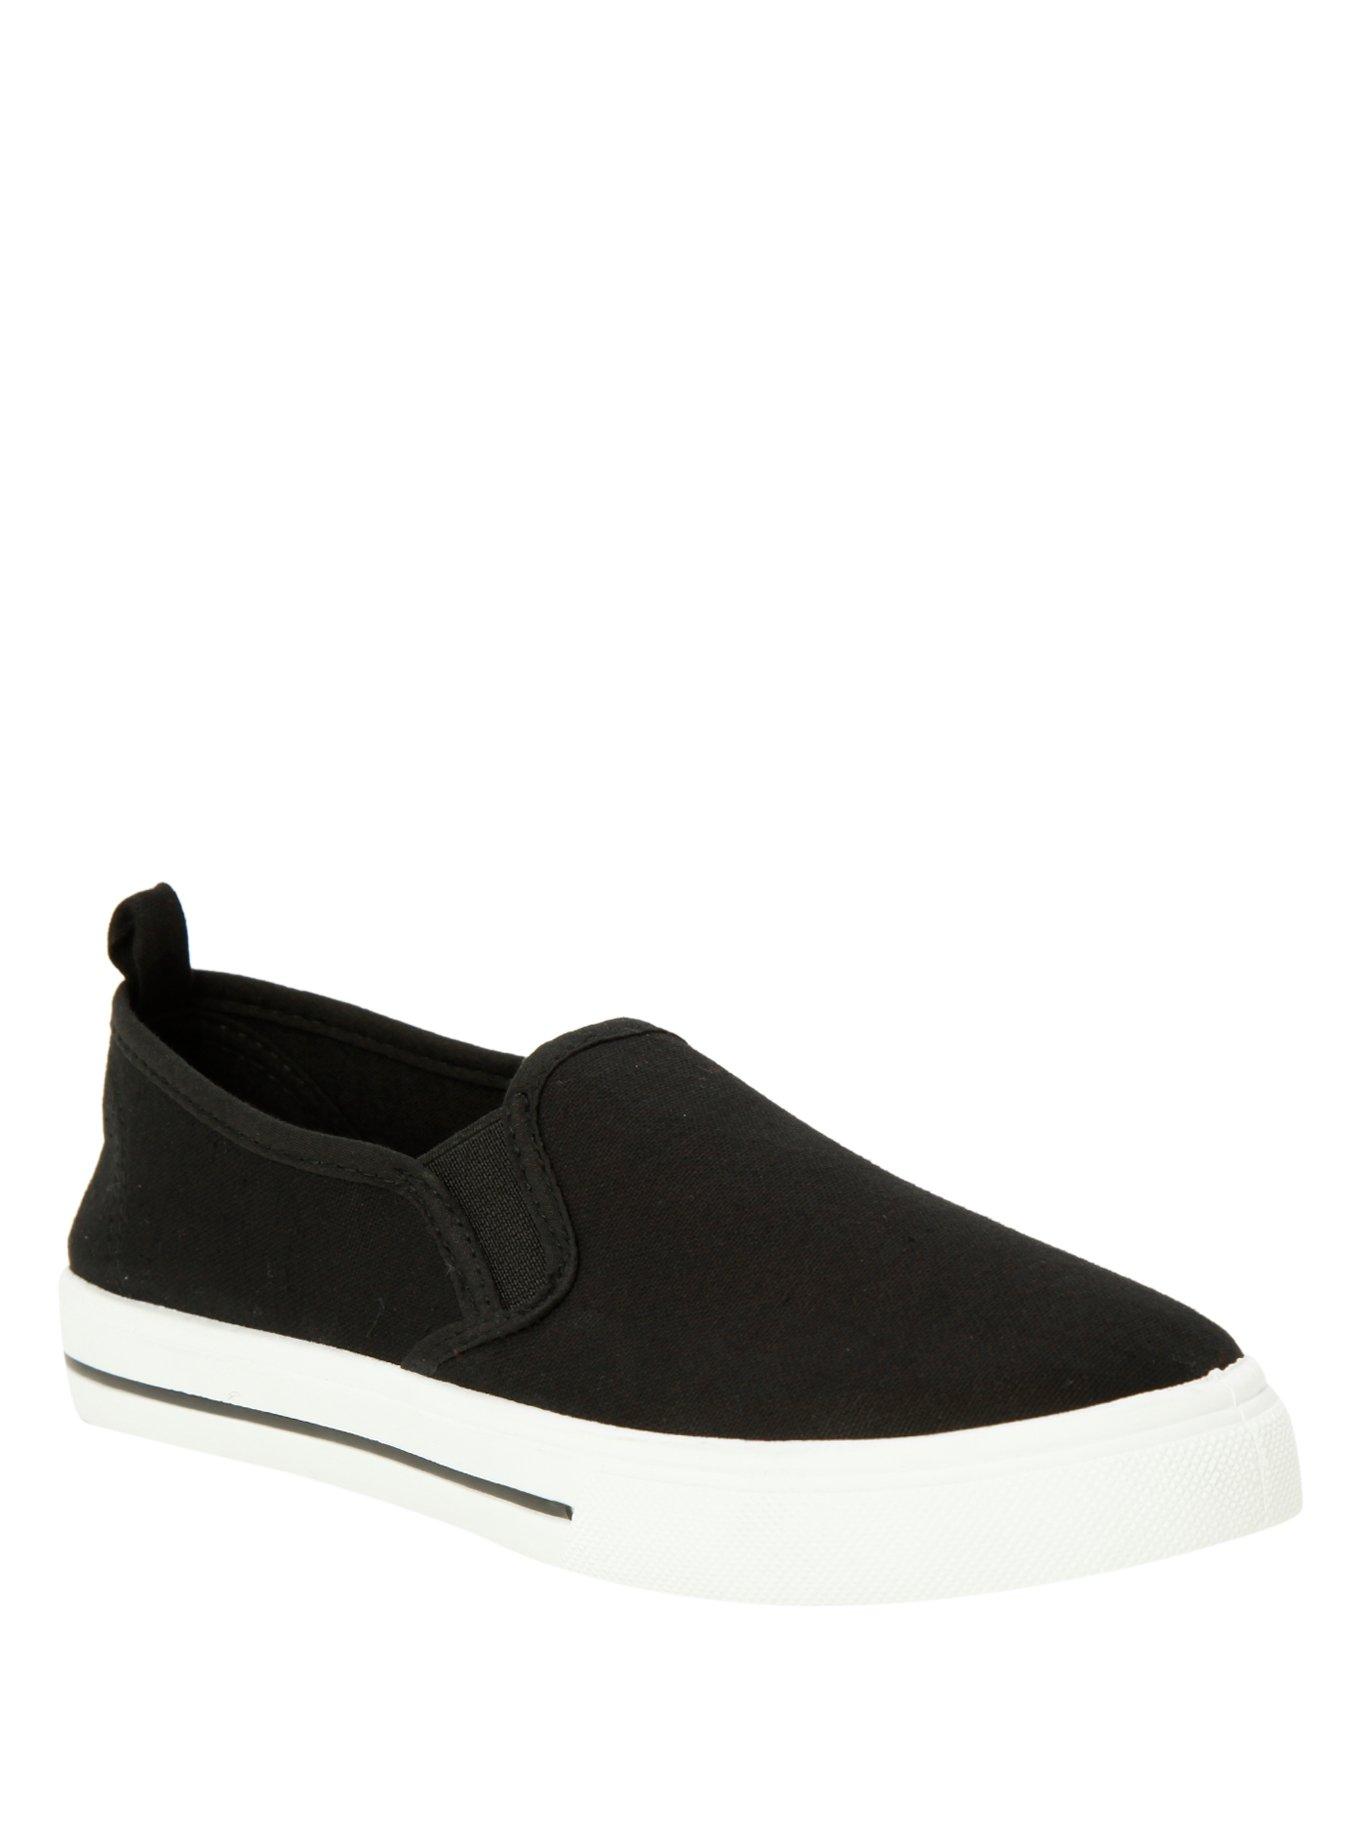 Black Slip-On Shoes, BLACK, hi-res